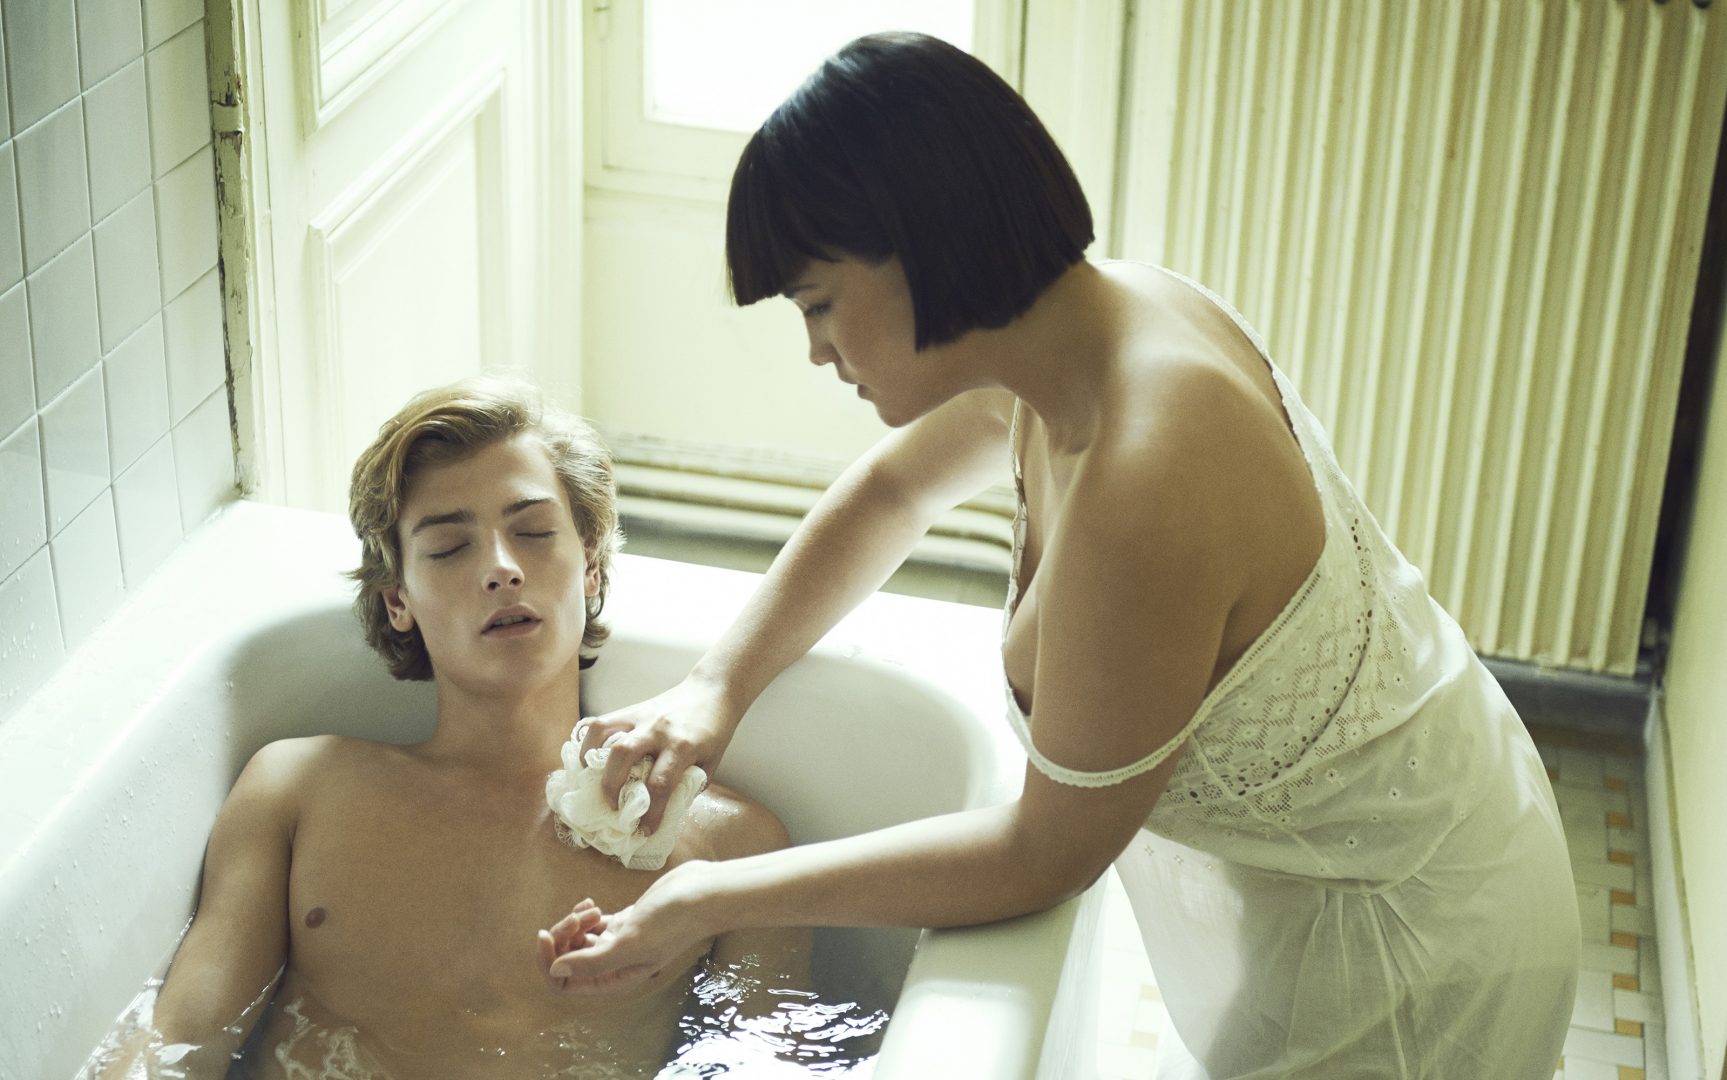 Girl giving boy a bath by Stefan Rappo